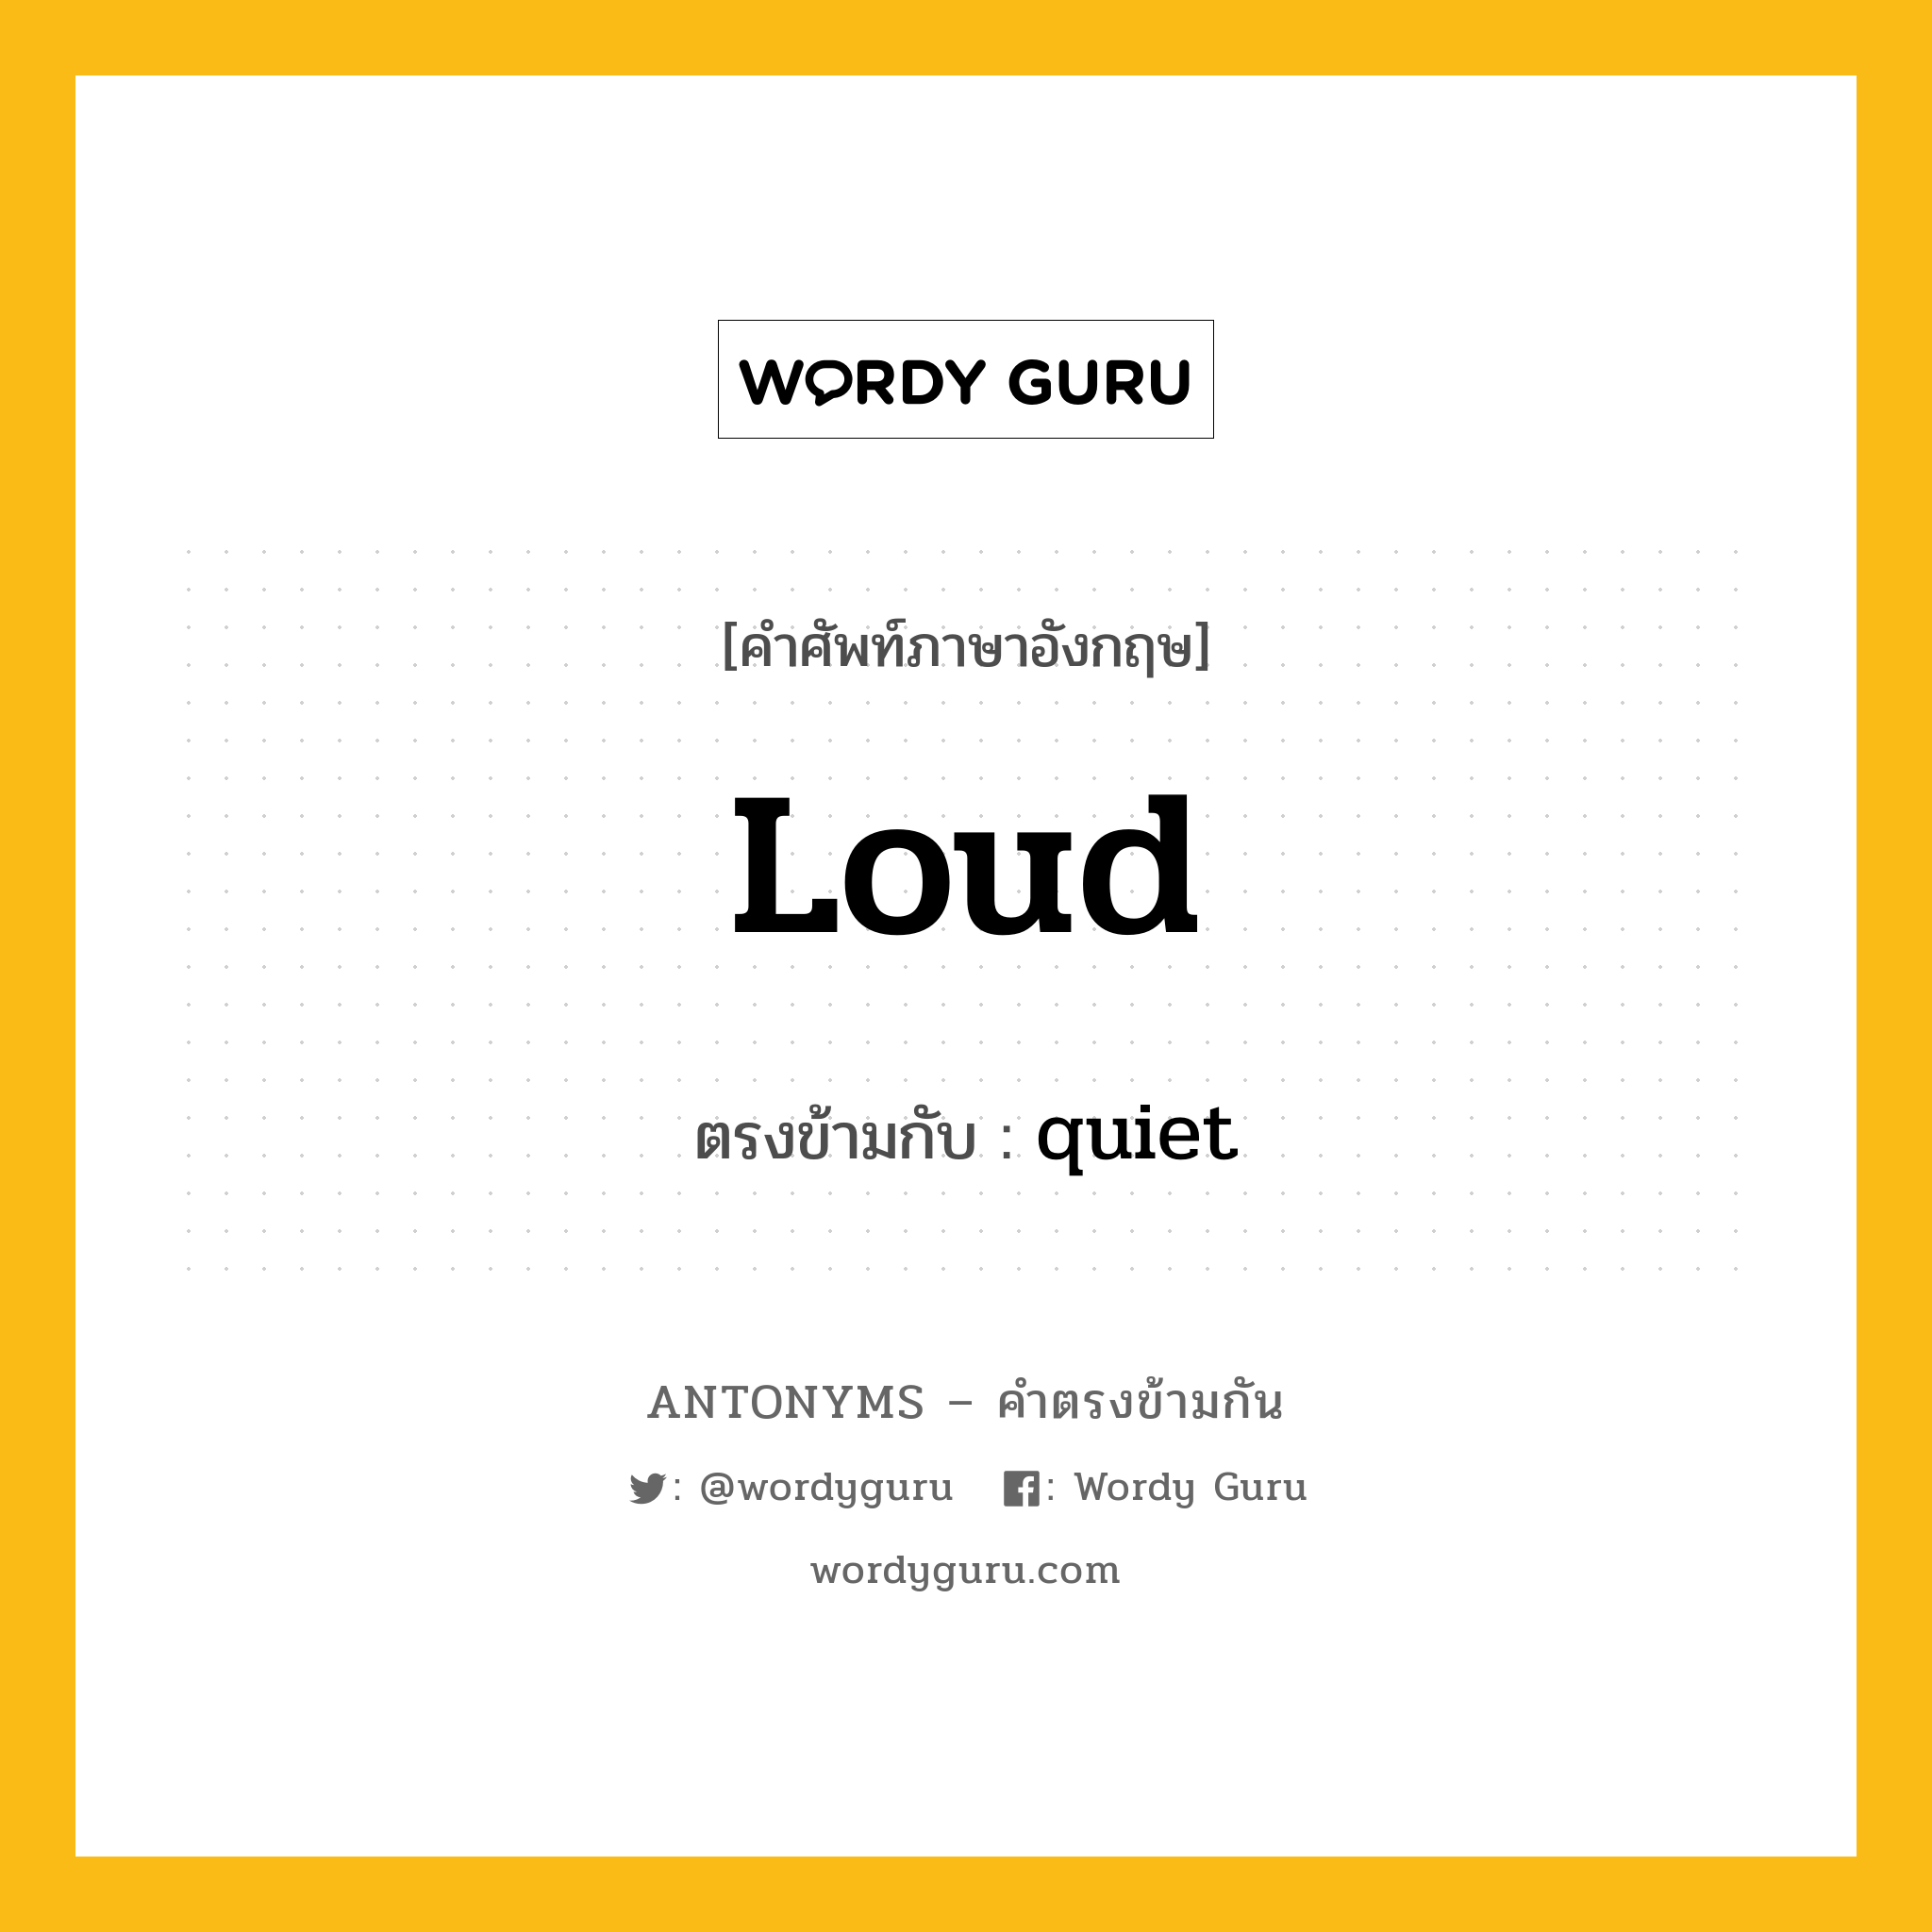 loud เป็นคำตรงข้ามกับคำไหนบ้าง?, คำศัพท์ภาษาอังกฤษ loud ตรงข้ามกับ quiet หมวด quiet